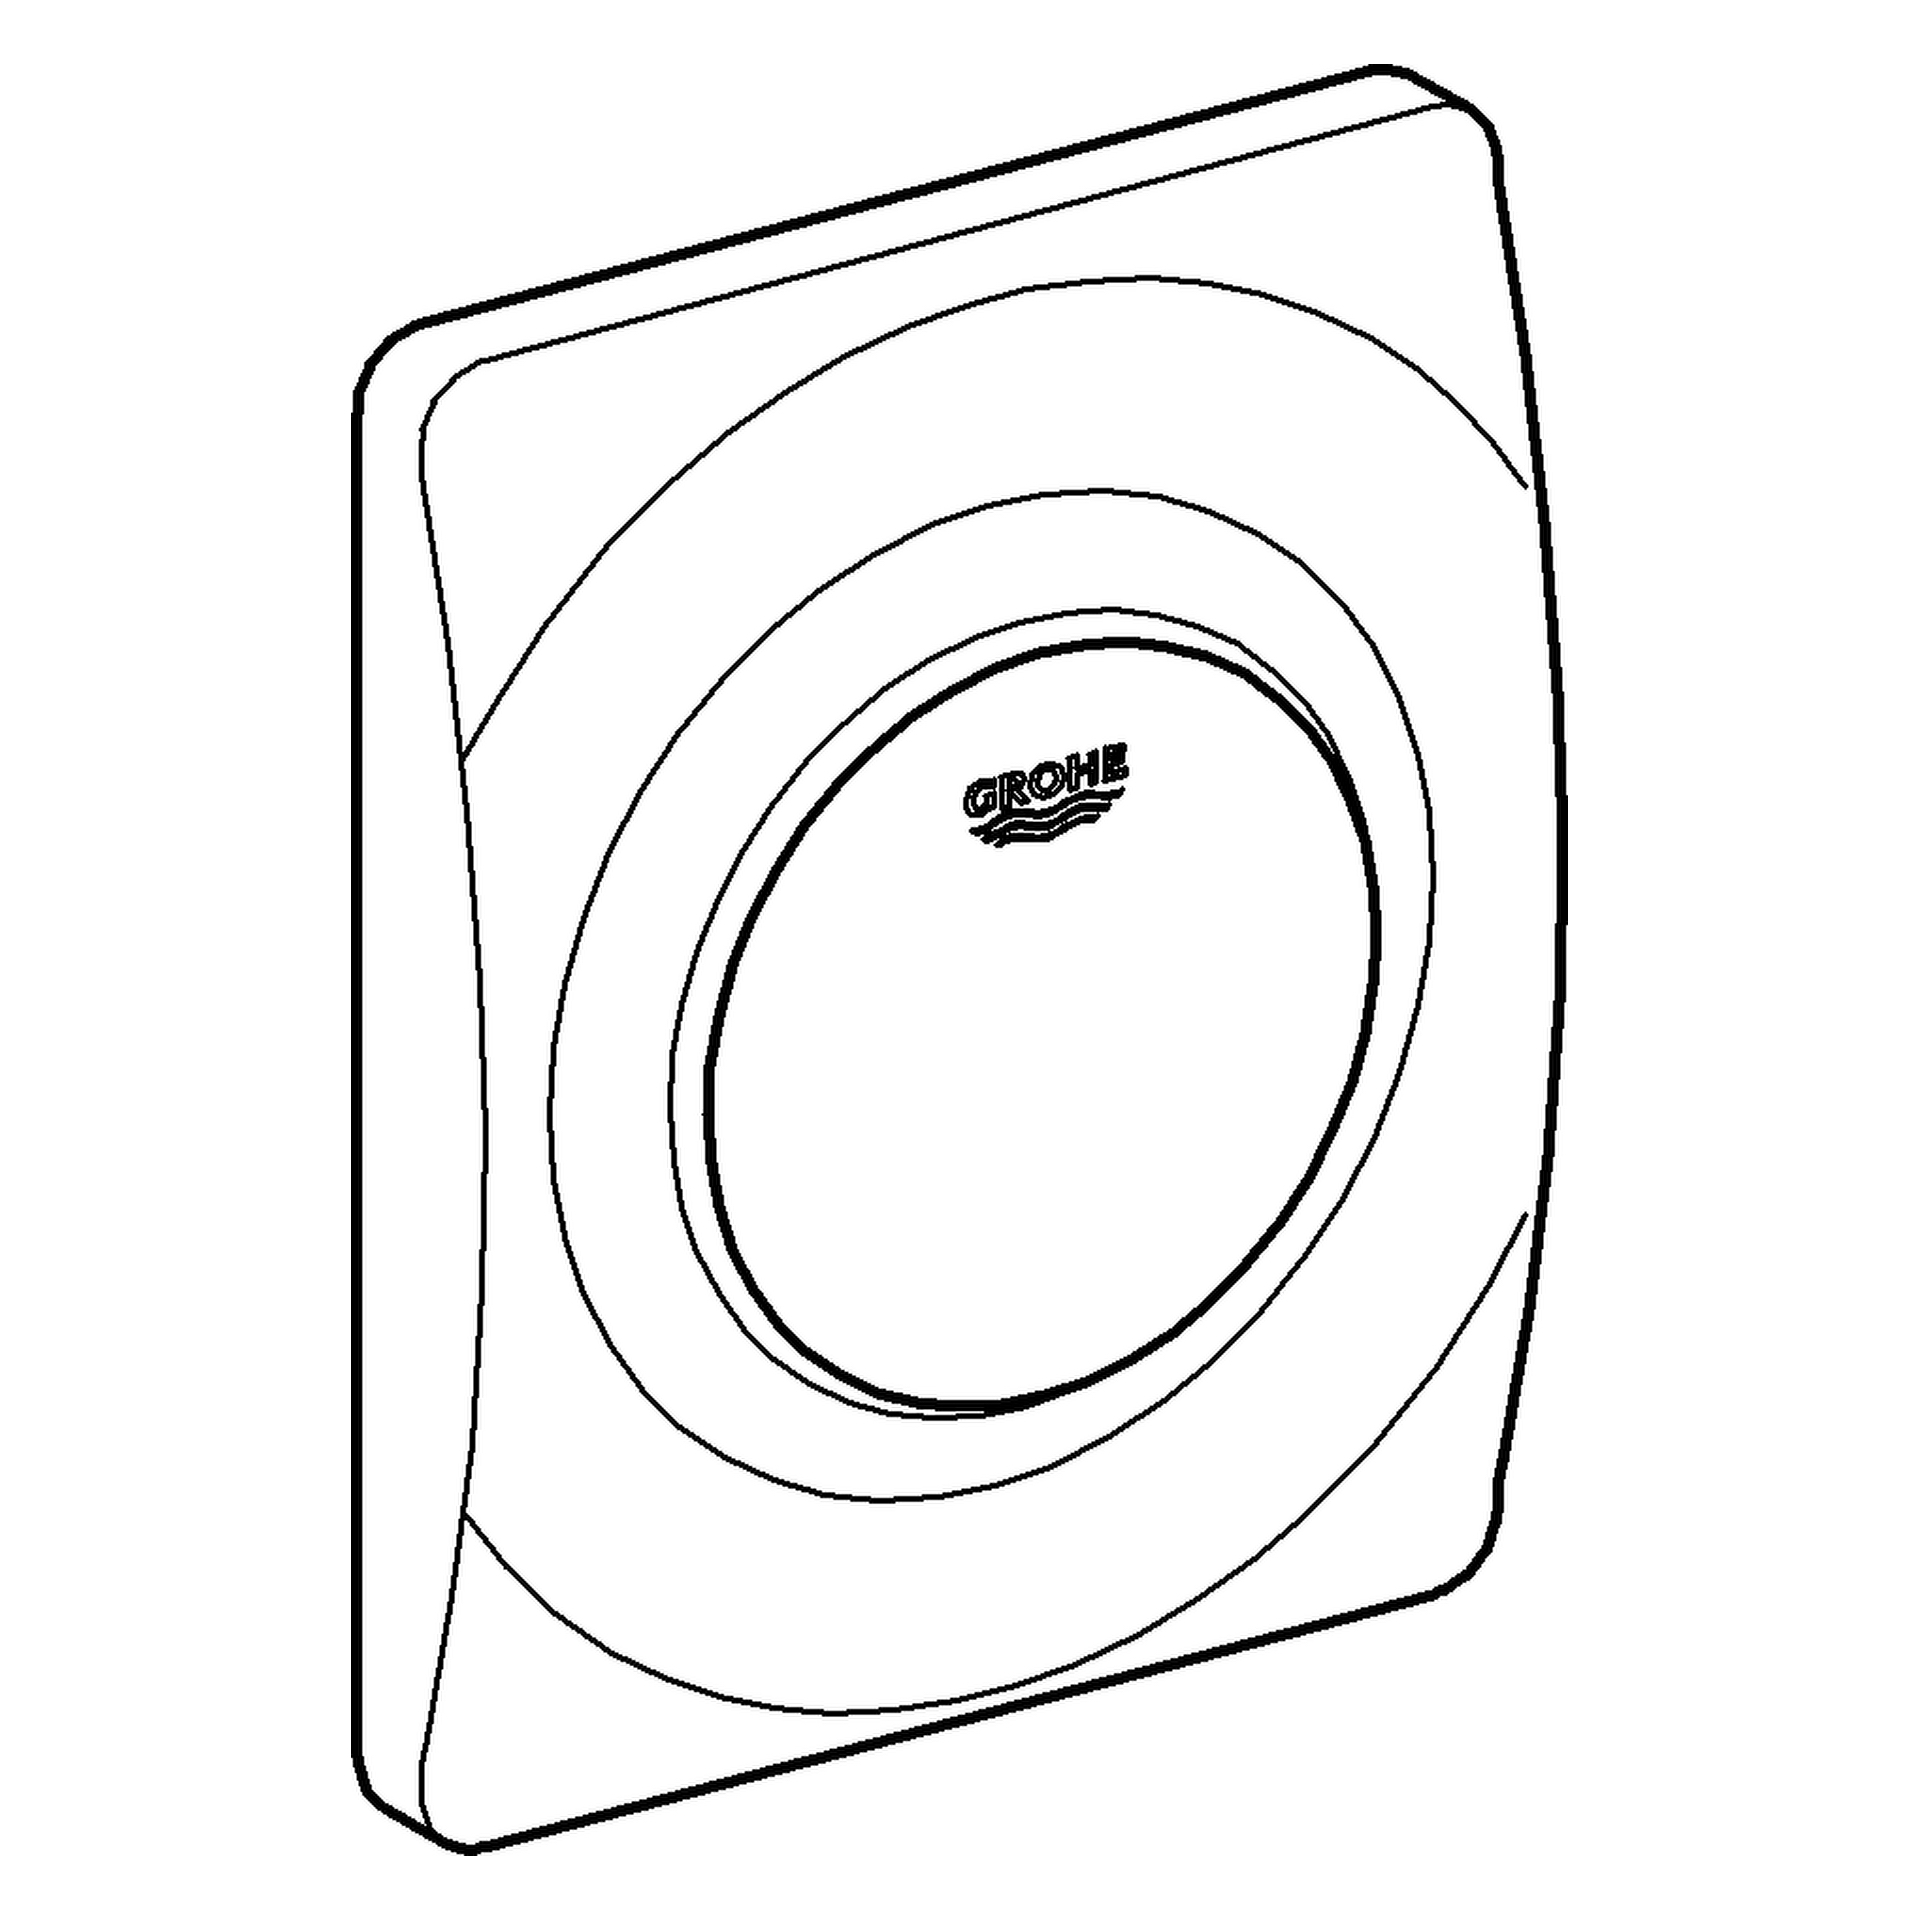 Urinal-Betätigung Surf 38808, 116 × 144 mm, Fertigmontageset für Rapido U oder Rapido UMB, alpinweiß